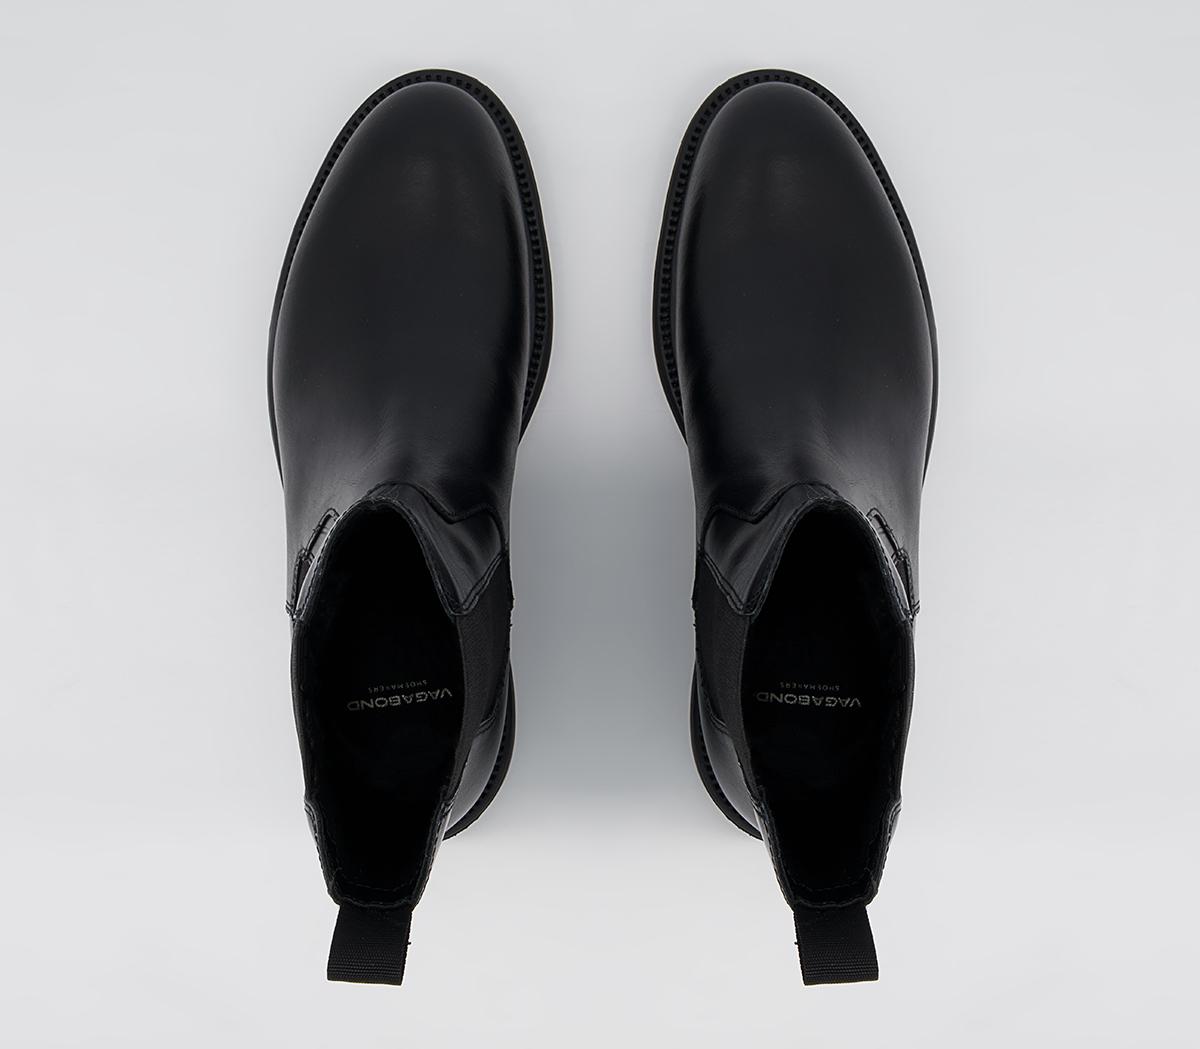 Vagabond Shoemakers Alex High Chelsea Boots Black - Women's Ankle Boots